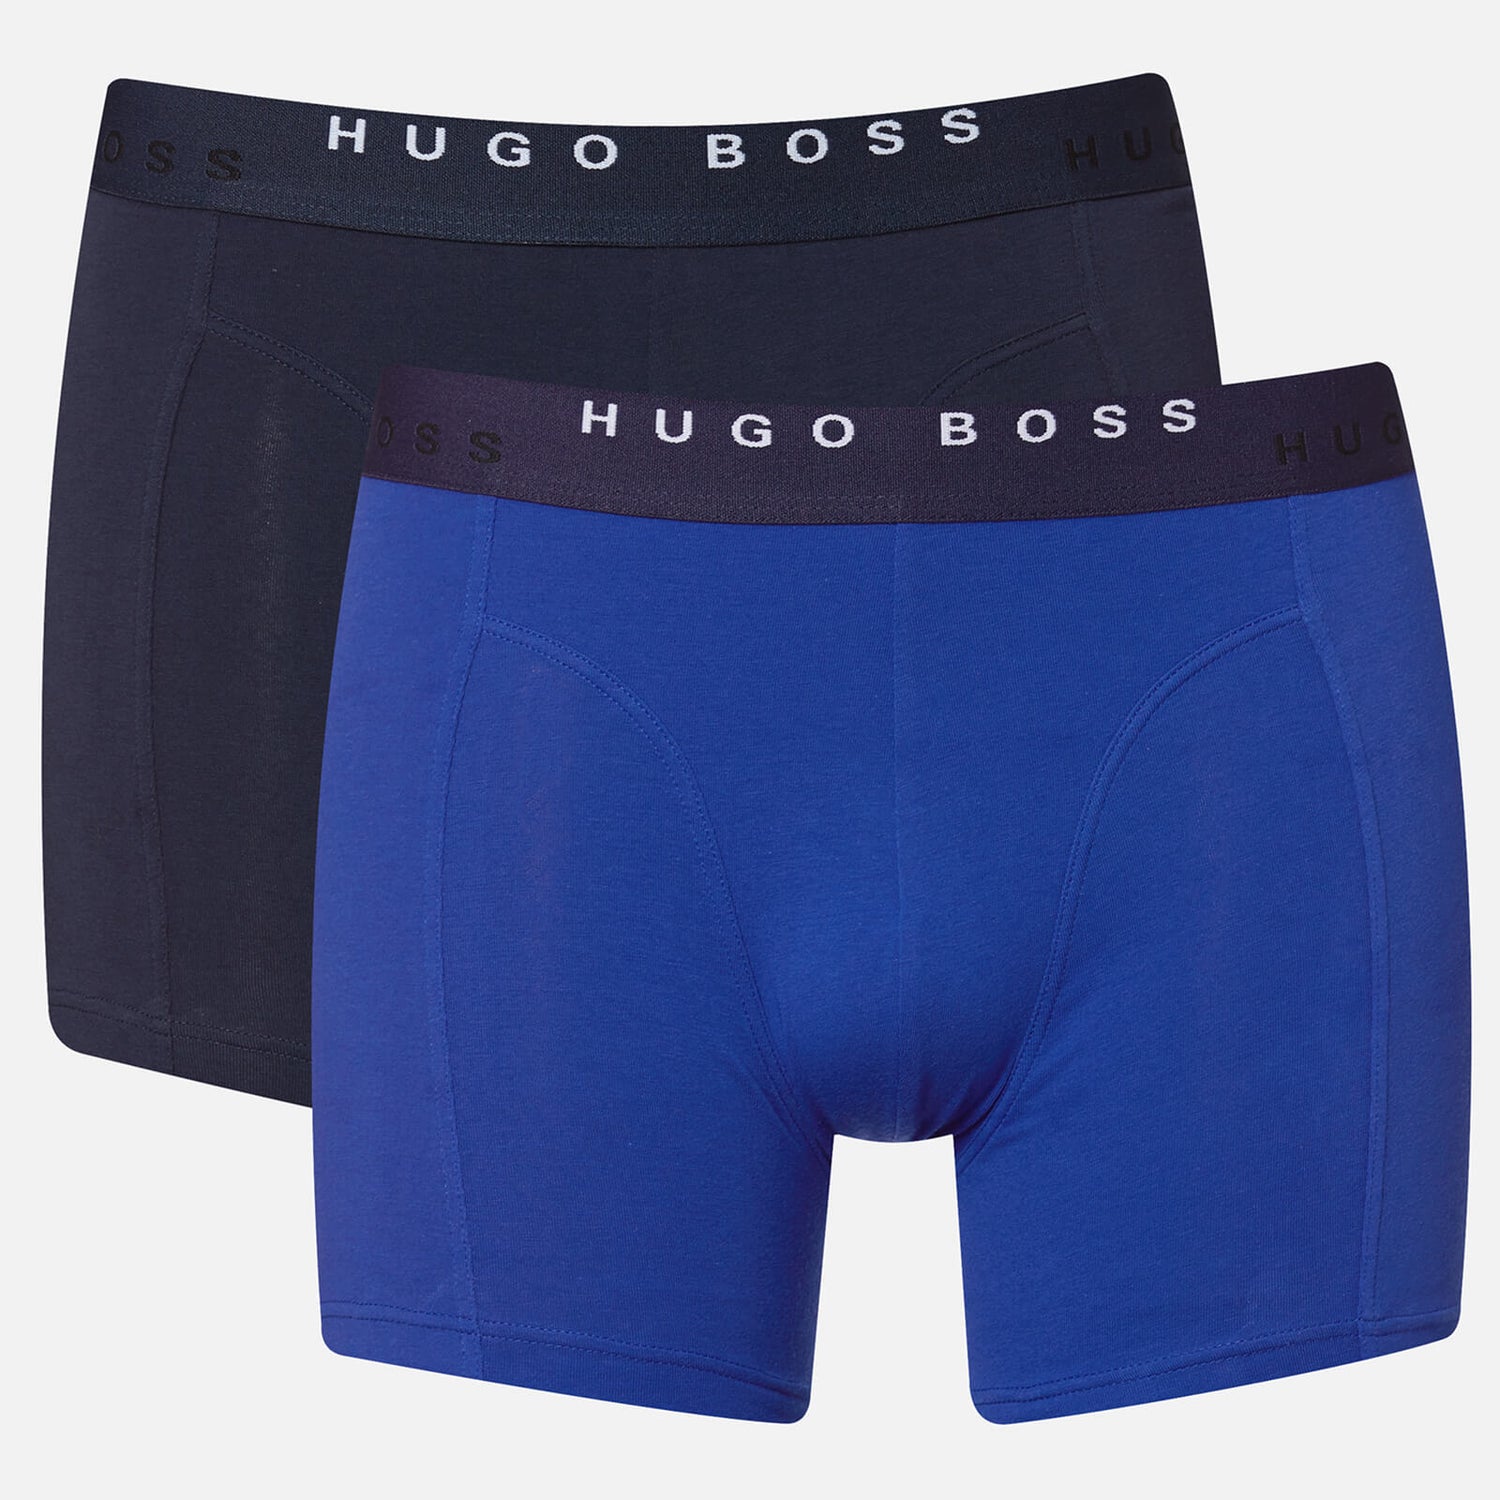 BOSS Hugo Boss Men's 2 Pack Print Boxer Briefs - Open Blue | TheHut.com